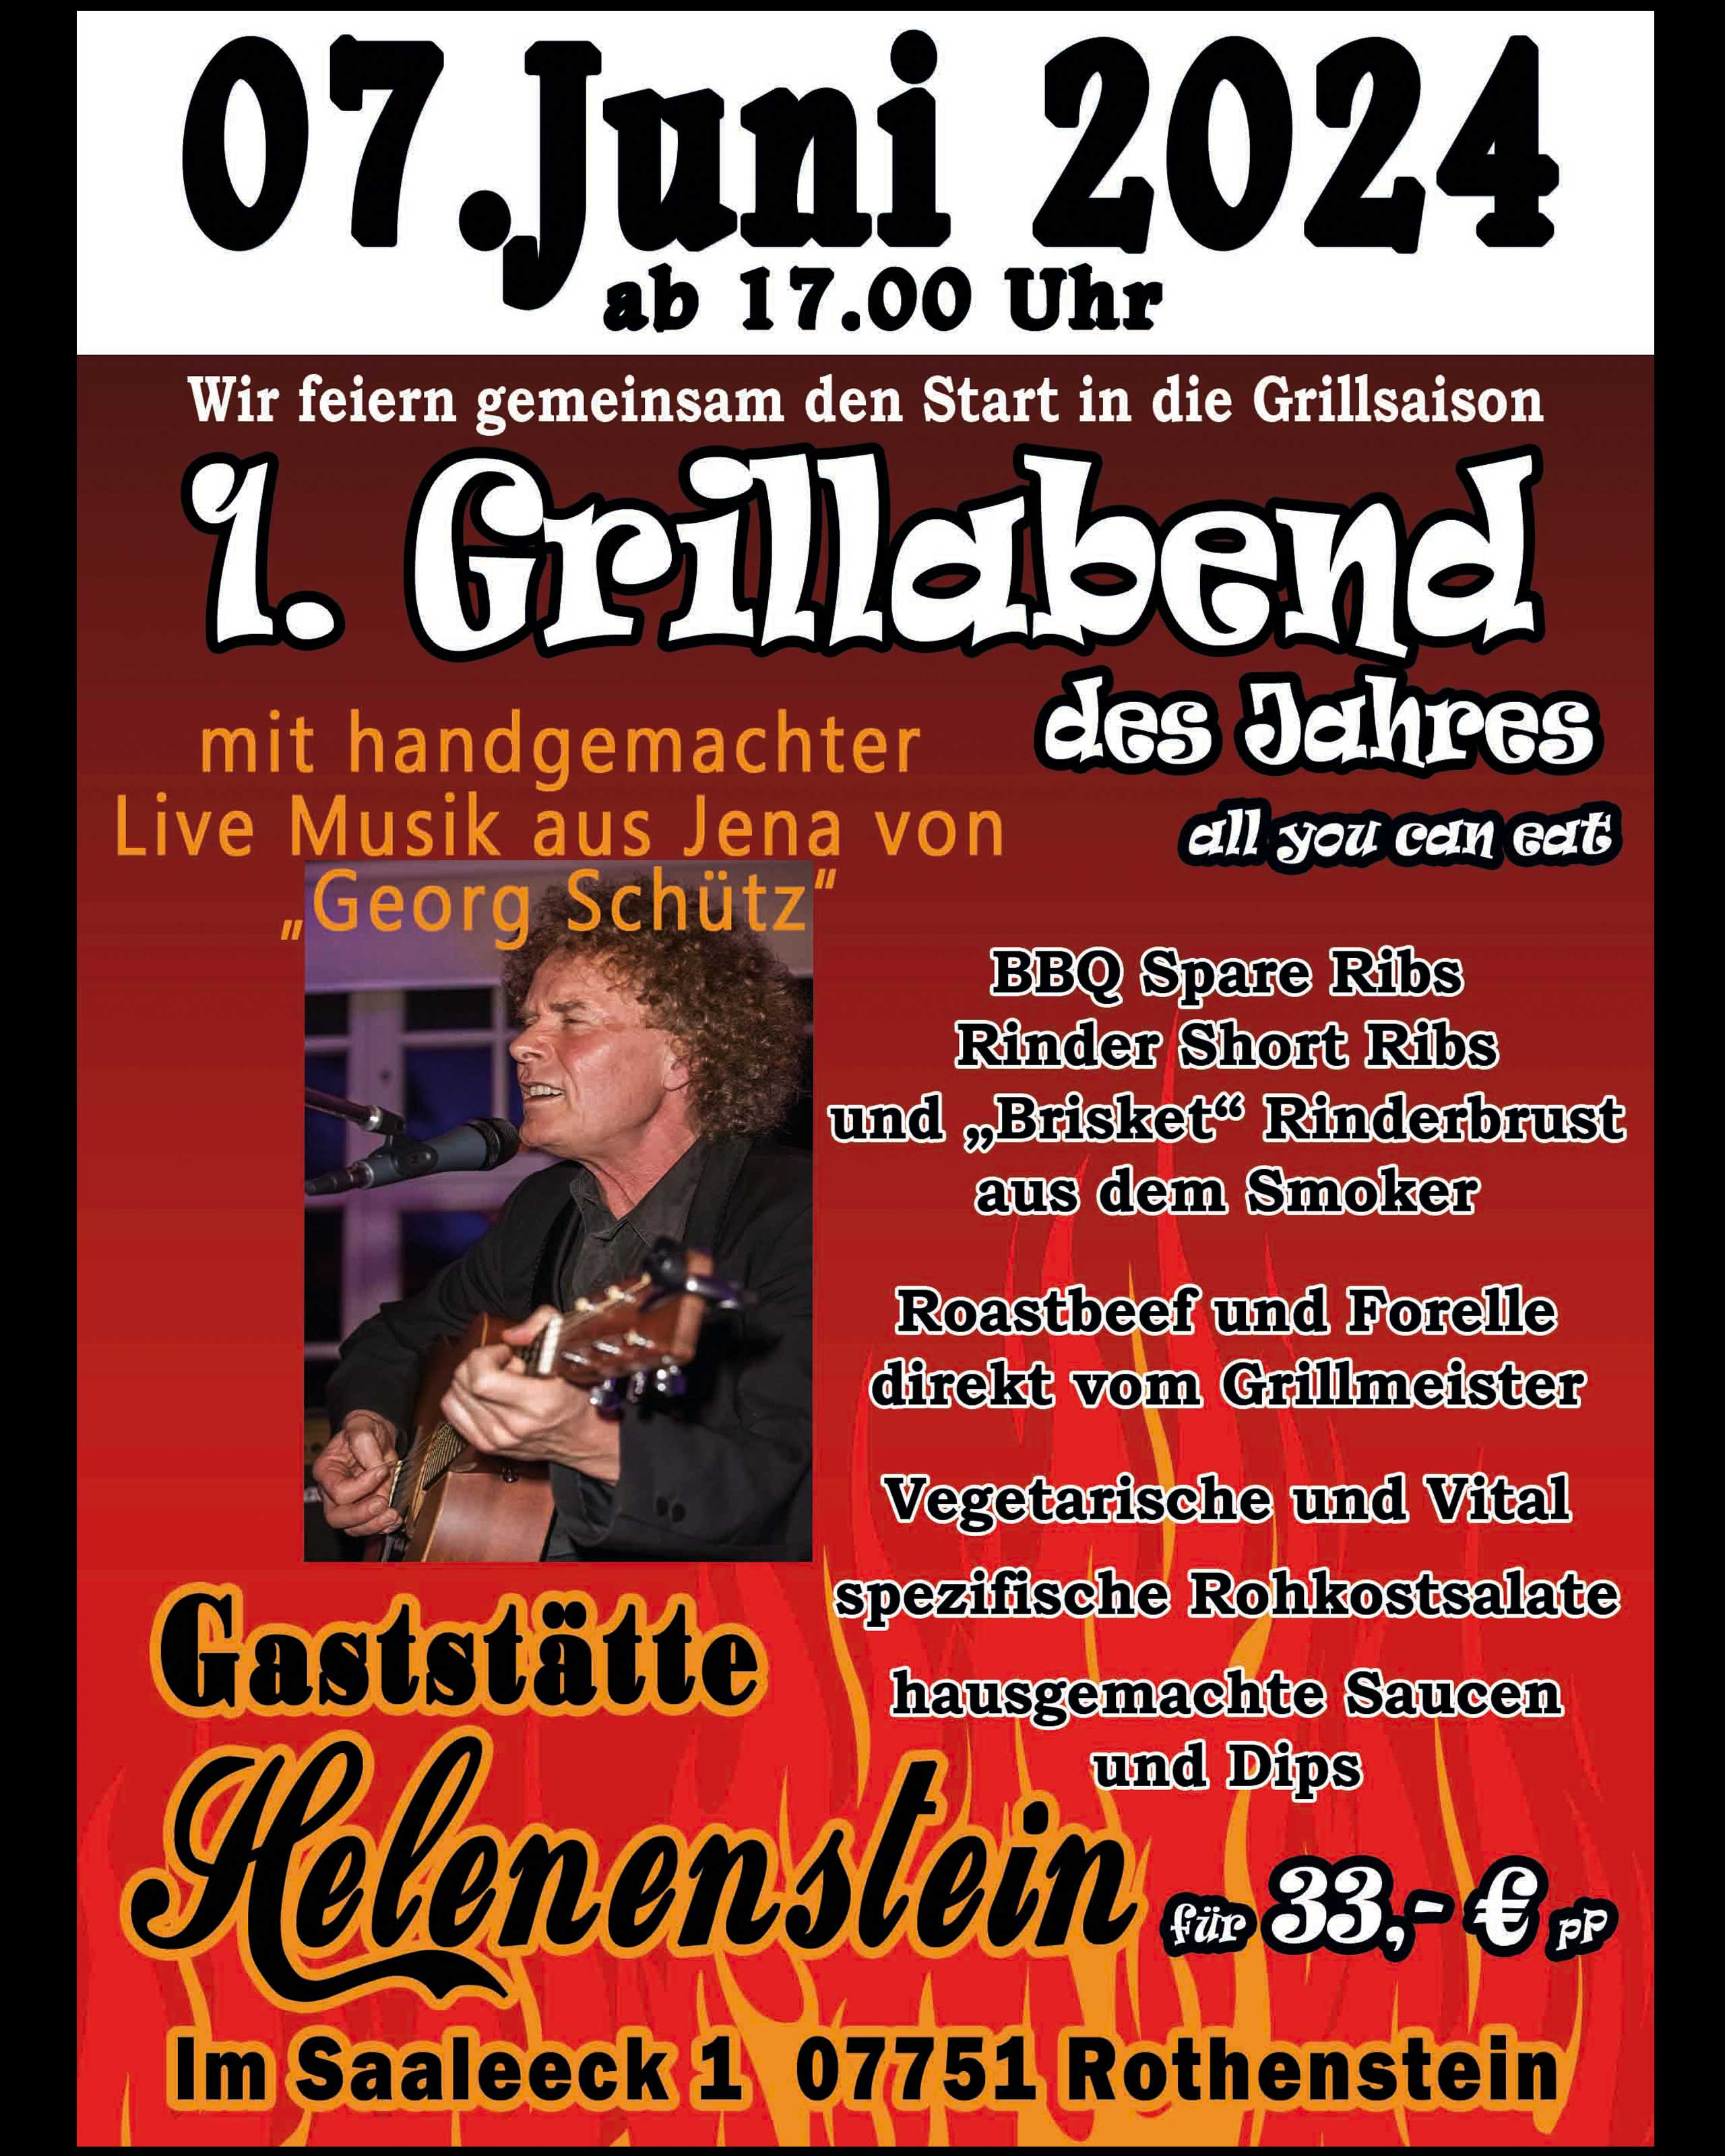 Gaststätte Helenenstein - Grillabend